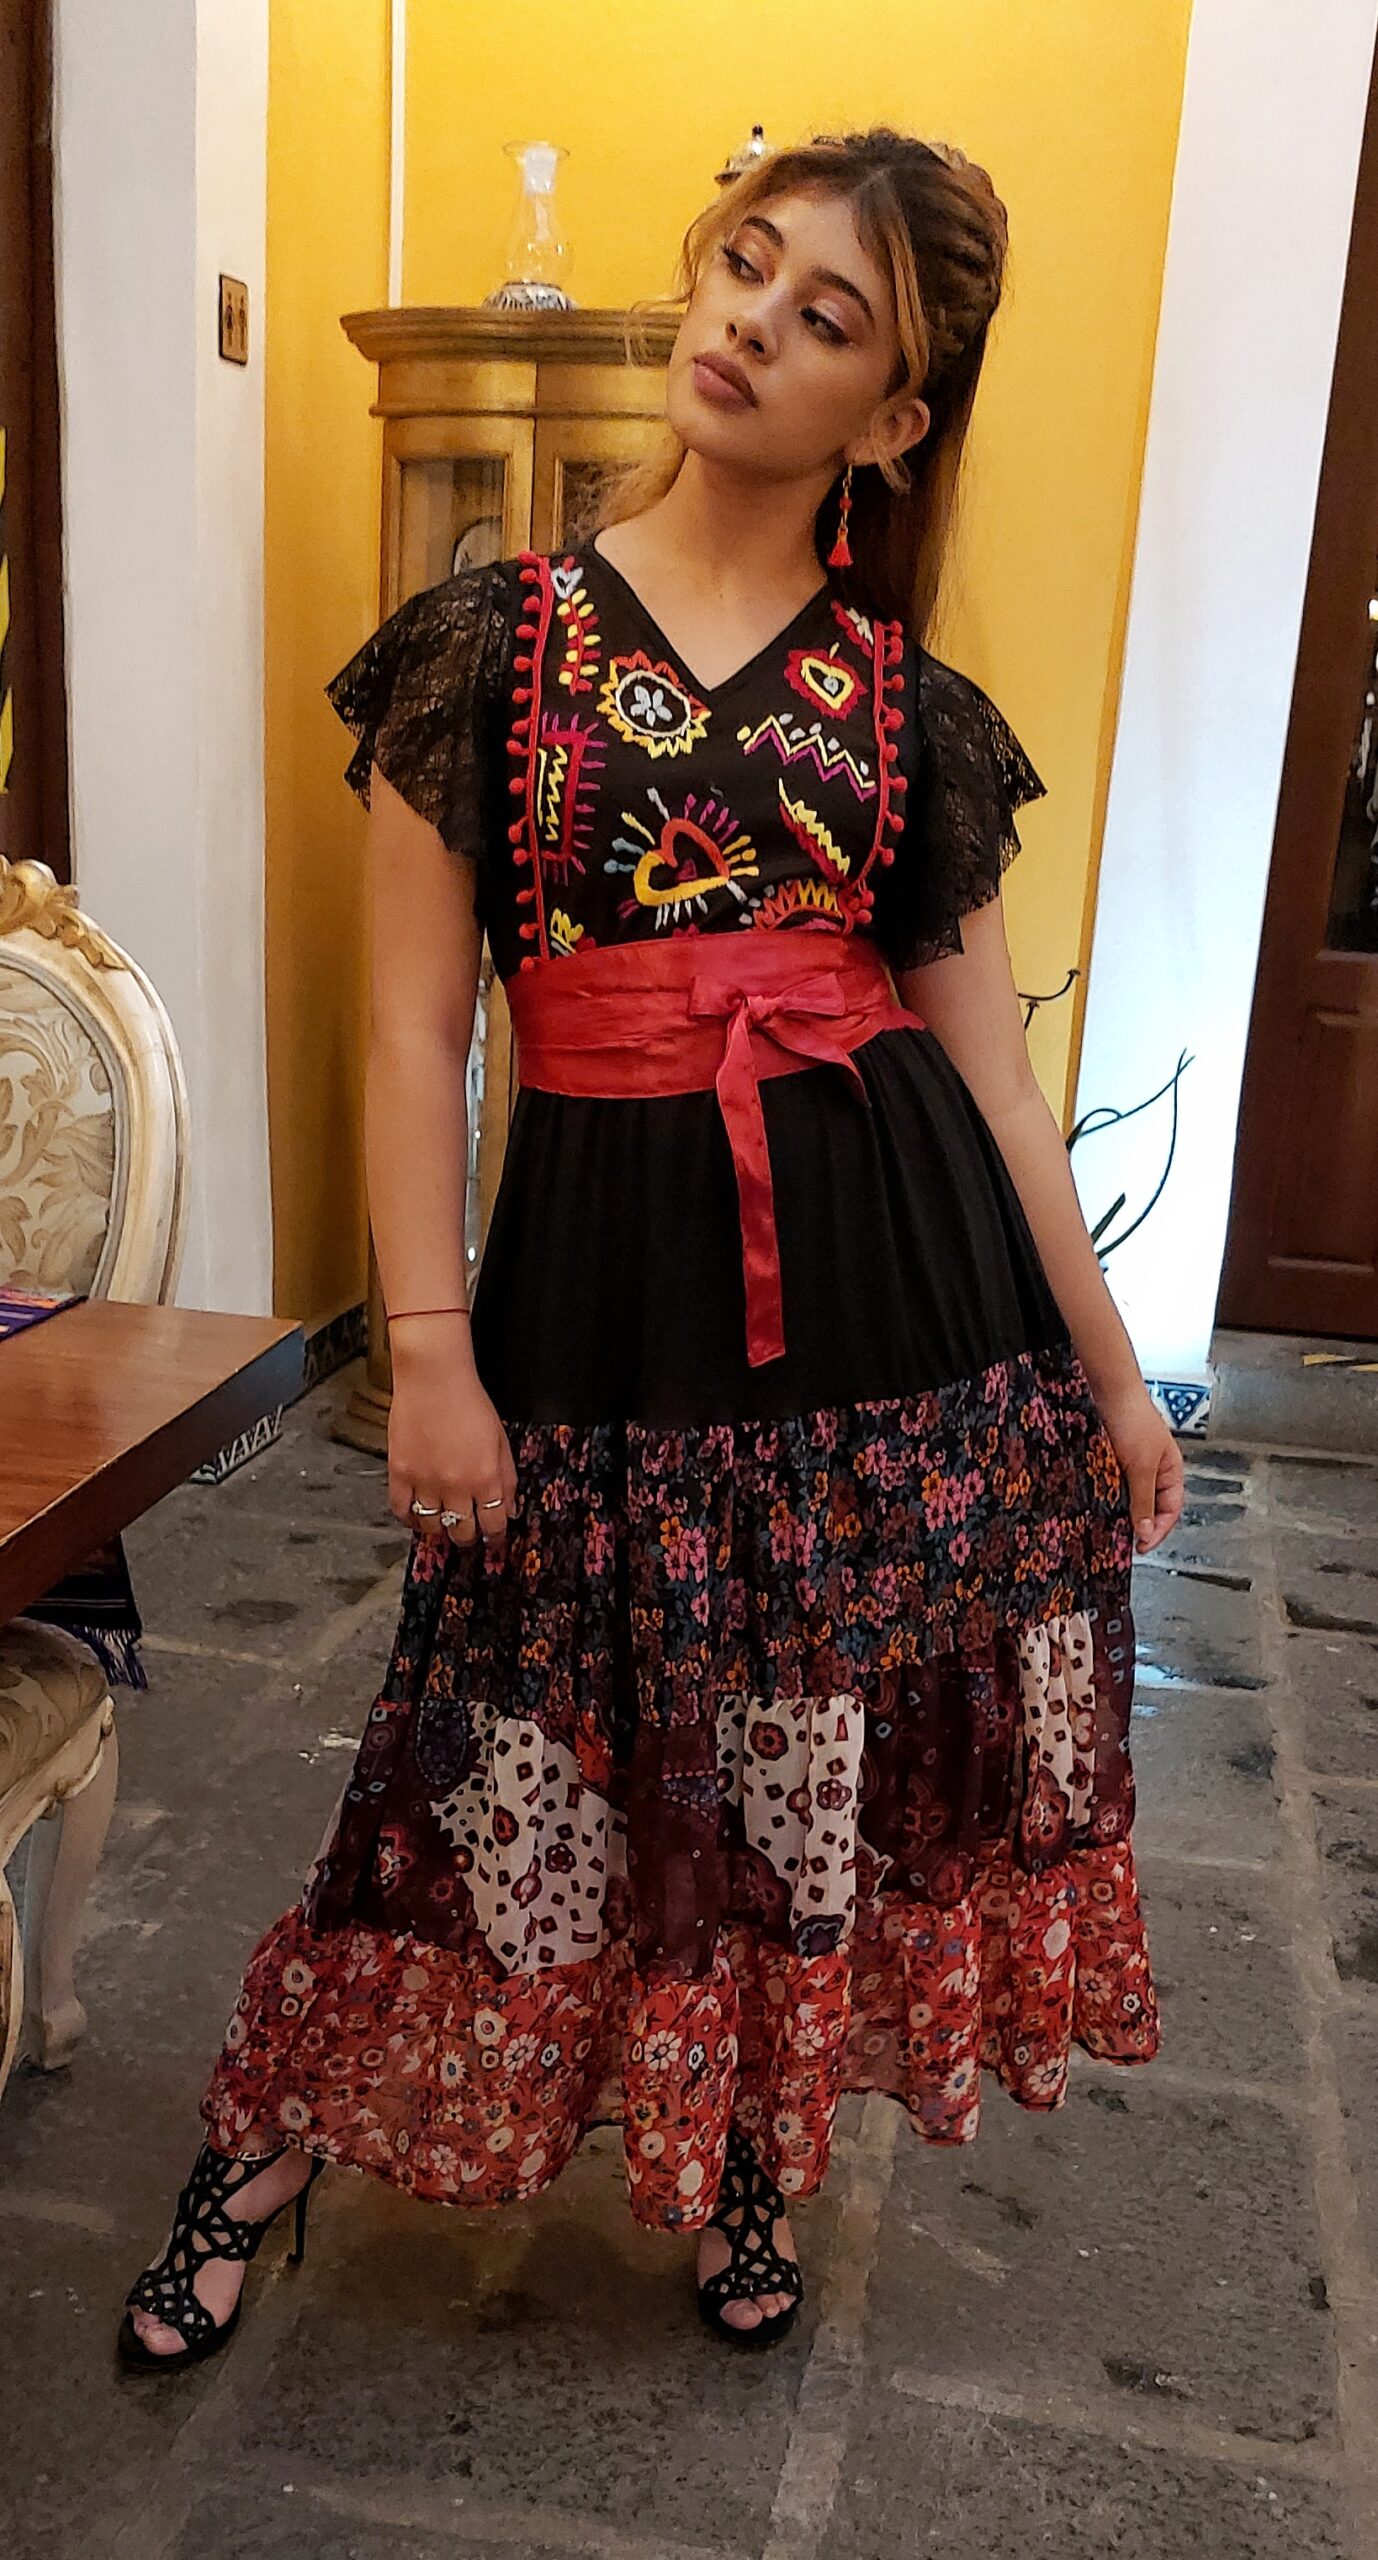 Vestido Toscana Olanes negro rojo flores - Tienda Mexicana